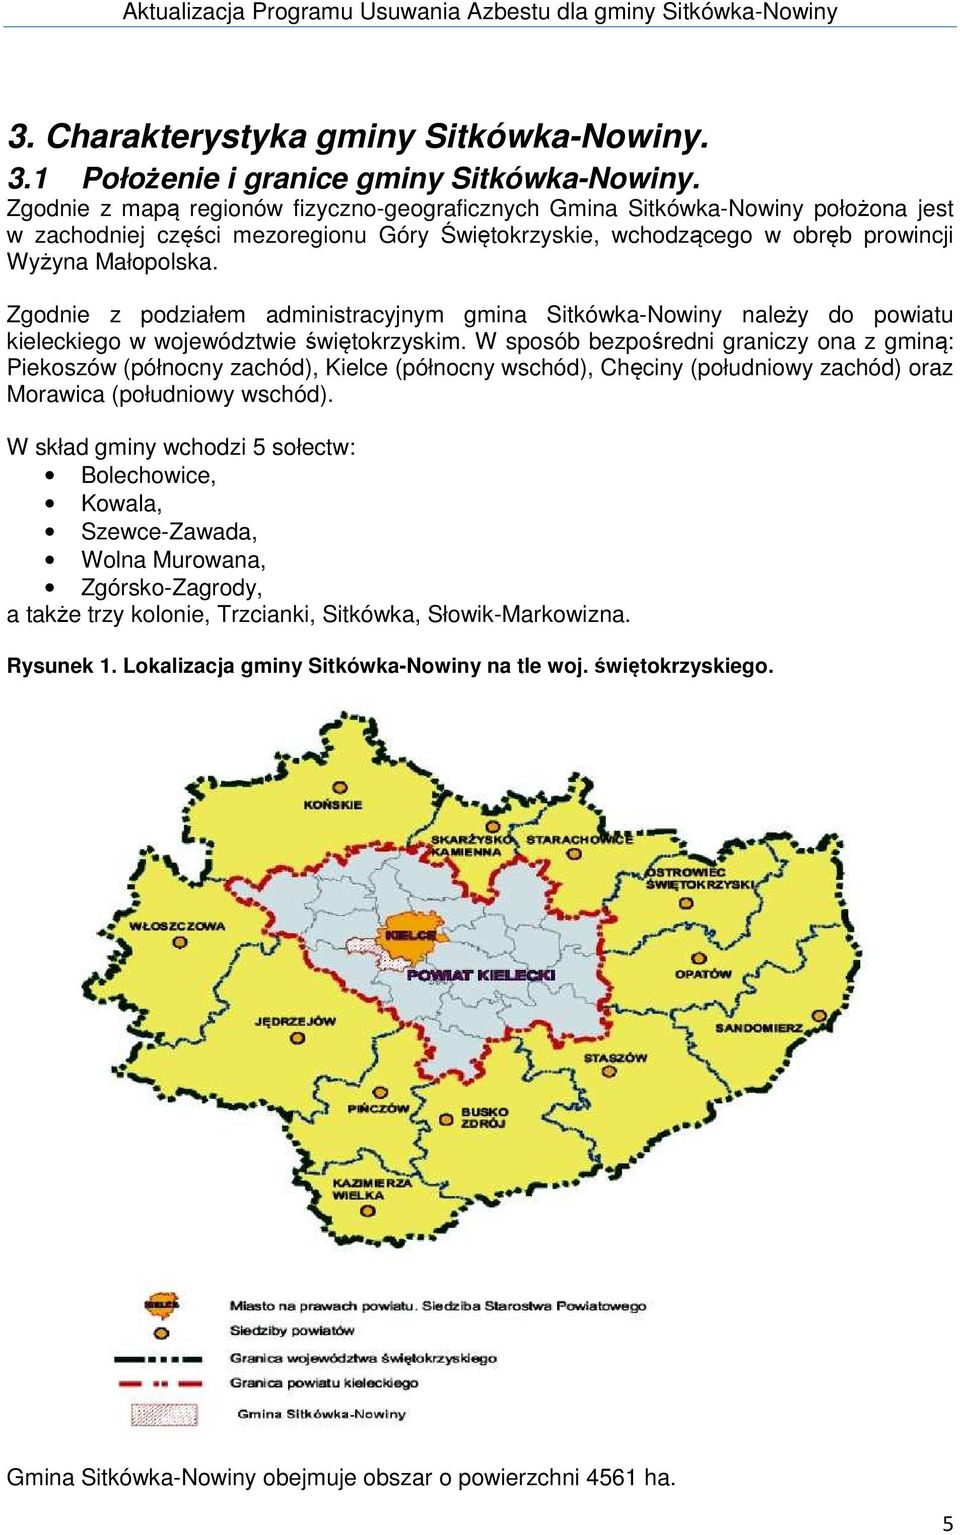 Zgodnie z podziałem administracyjnym gmina Sitkówka-Nowiny należy do powiatu kieleckiego w województwie świętokrzyskim.